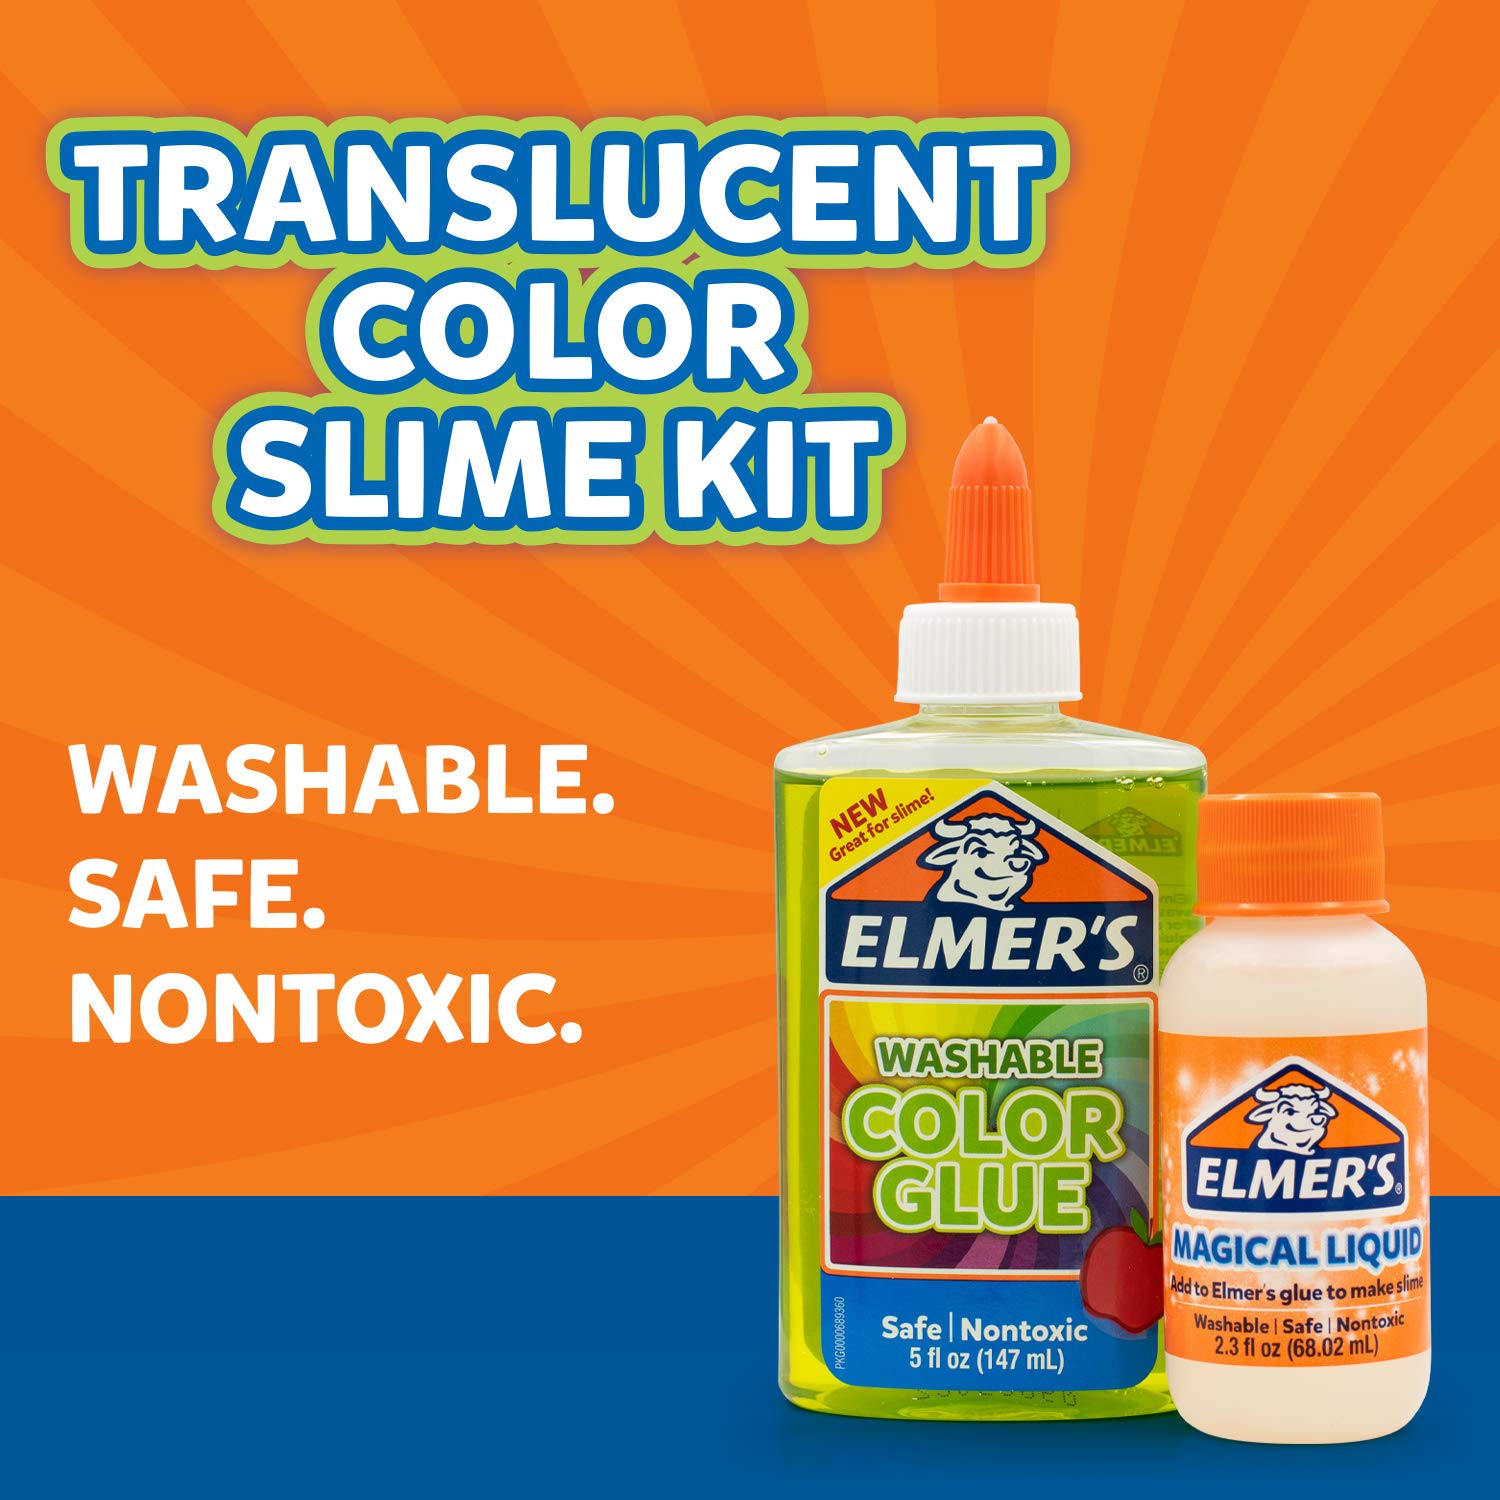 Elmer's Translucent Green Slime Kit